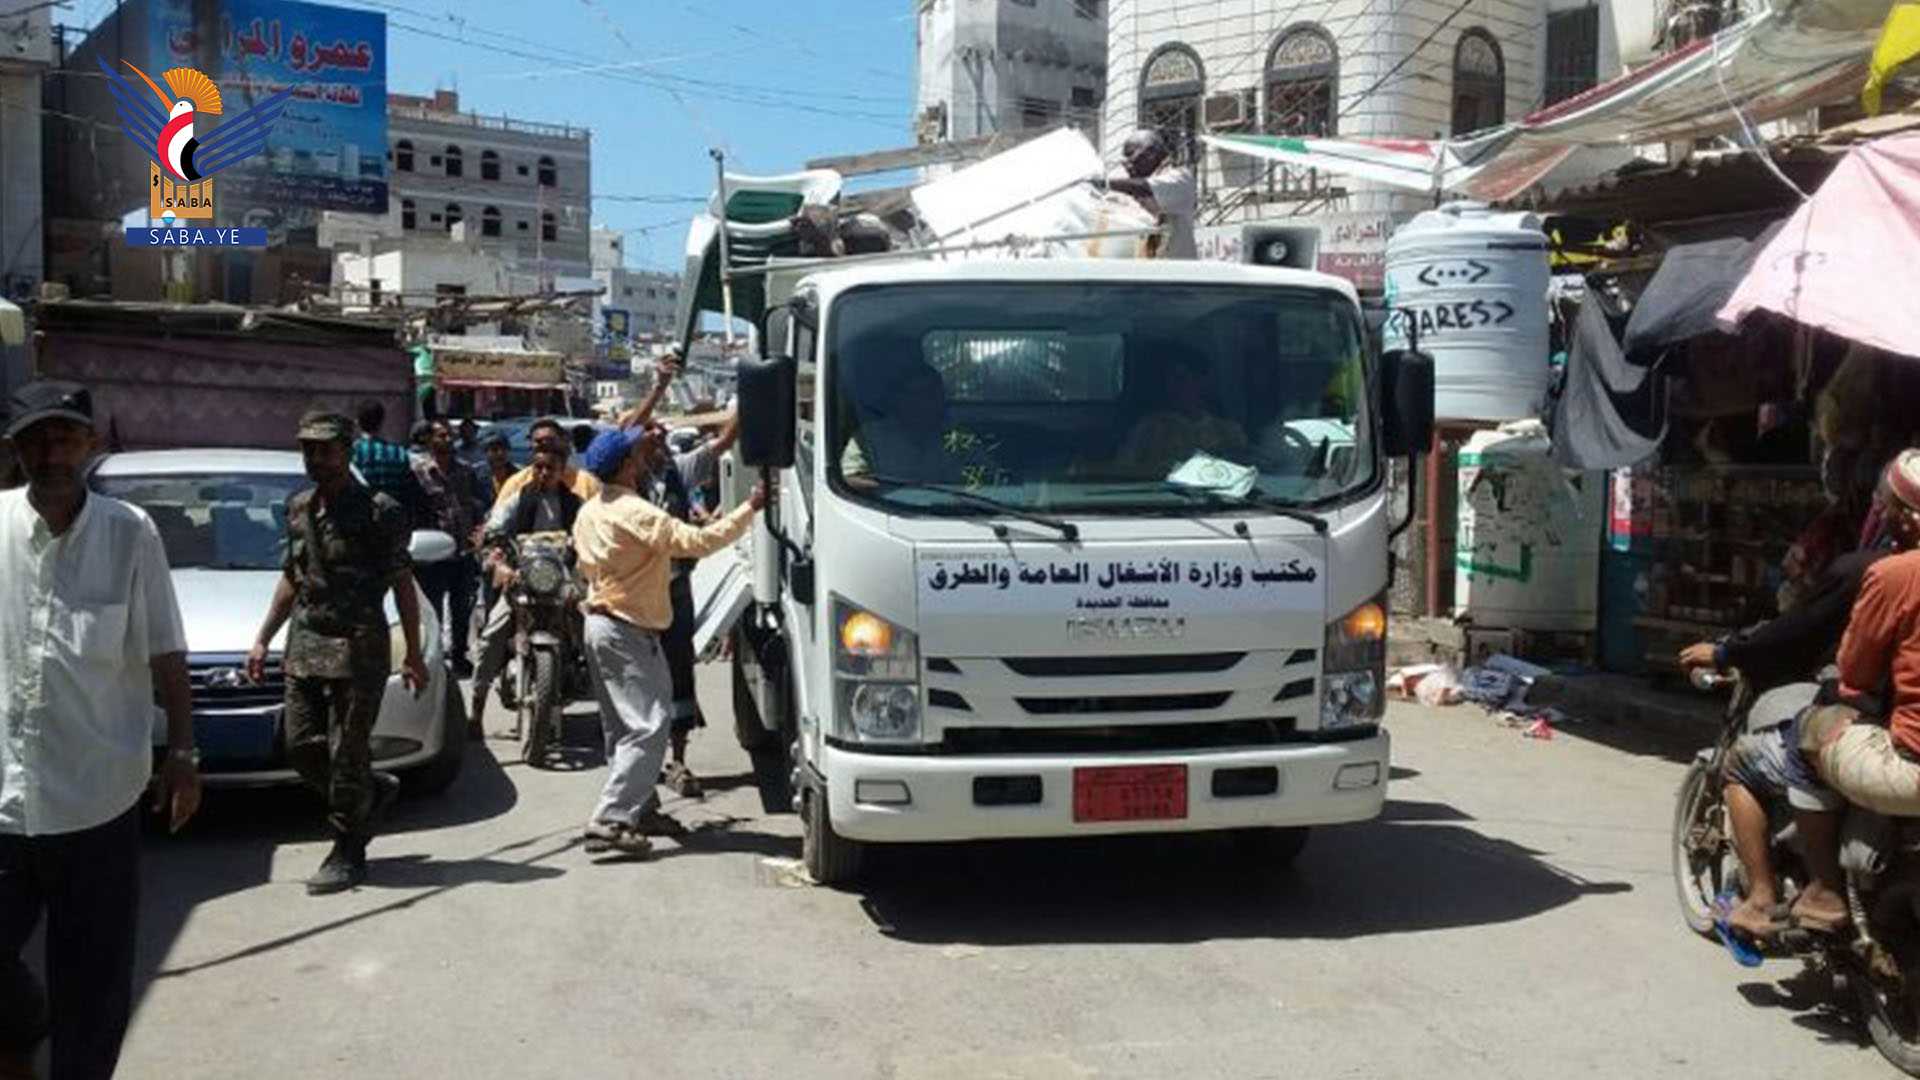 la campaña de campo elimina más de 150 infracciones en los mercados de la ciudad de Hodeidah